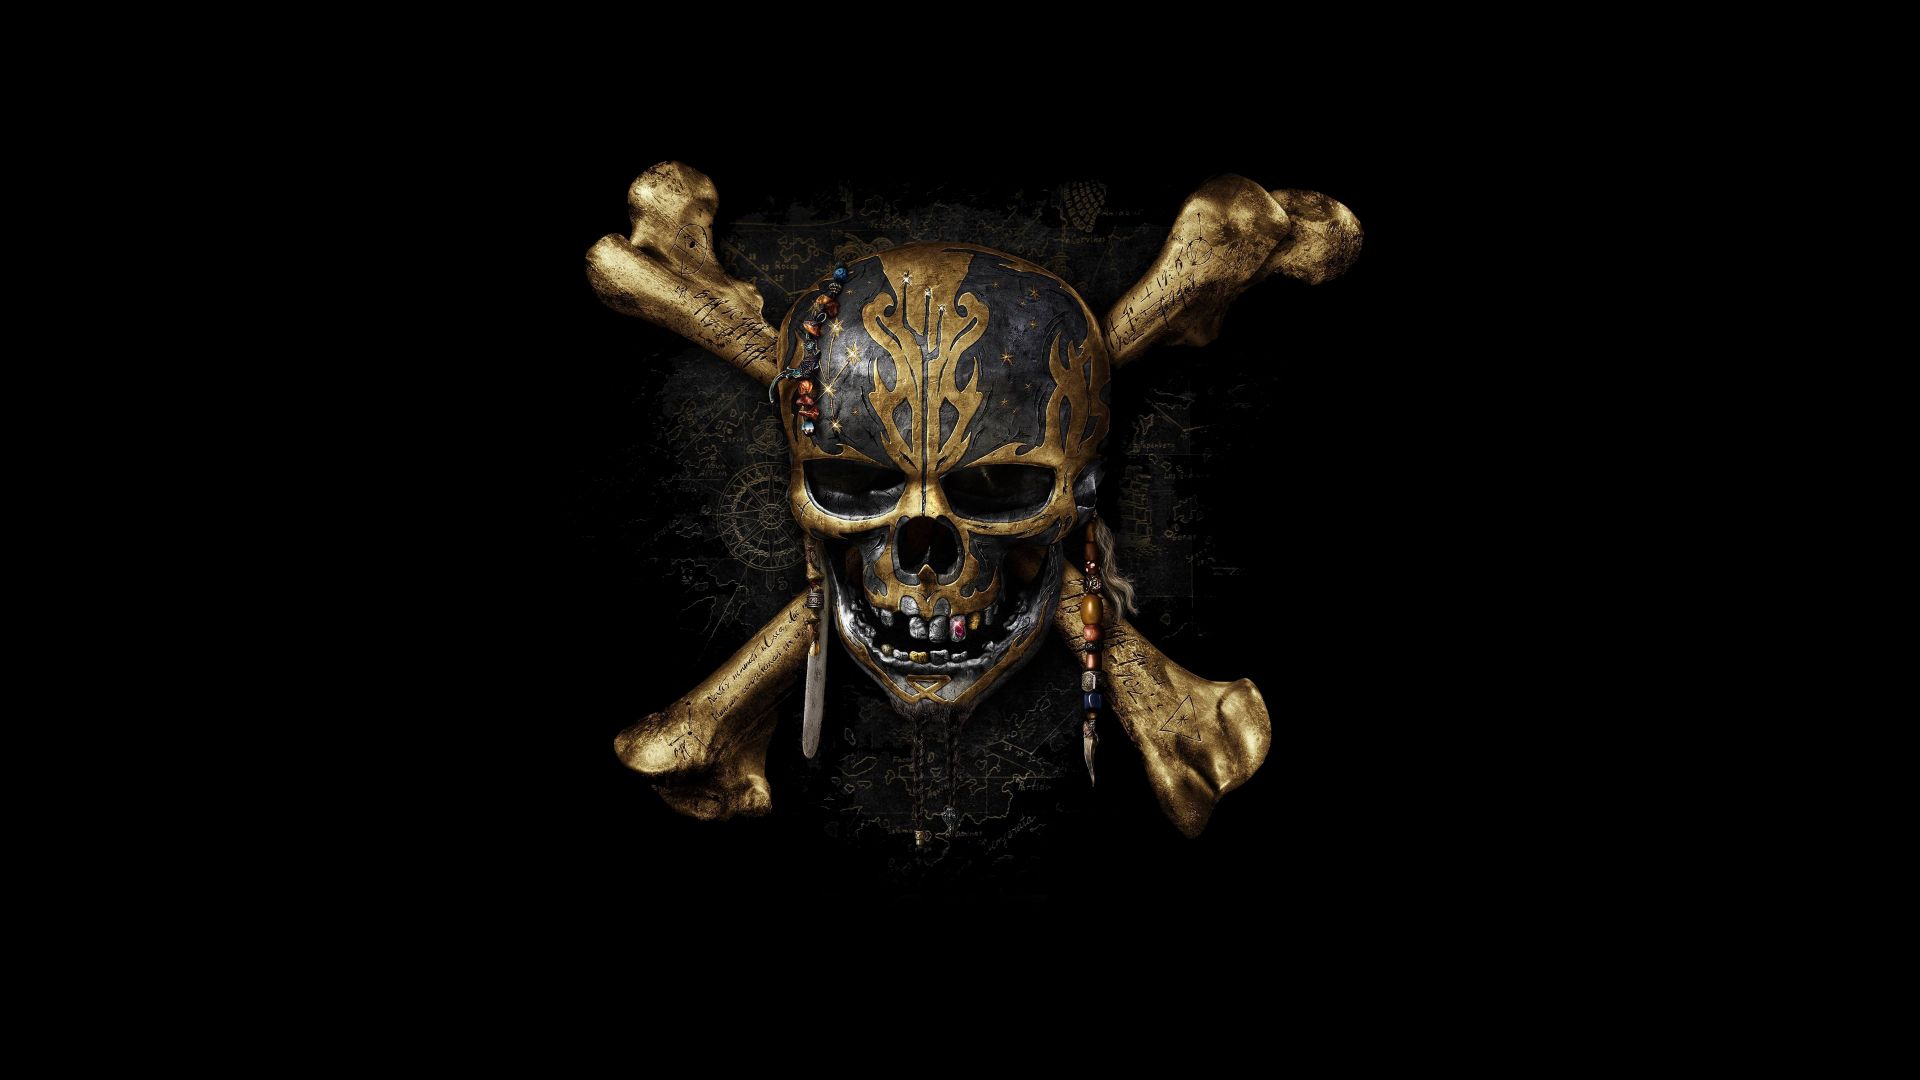 Пираты карибского моря 5, мертвецы не разговаривают, лучшие фильмы, Pirates of the Caribbean: Dead Men Tell No Tales, skull, best movies (horizontal)